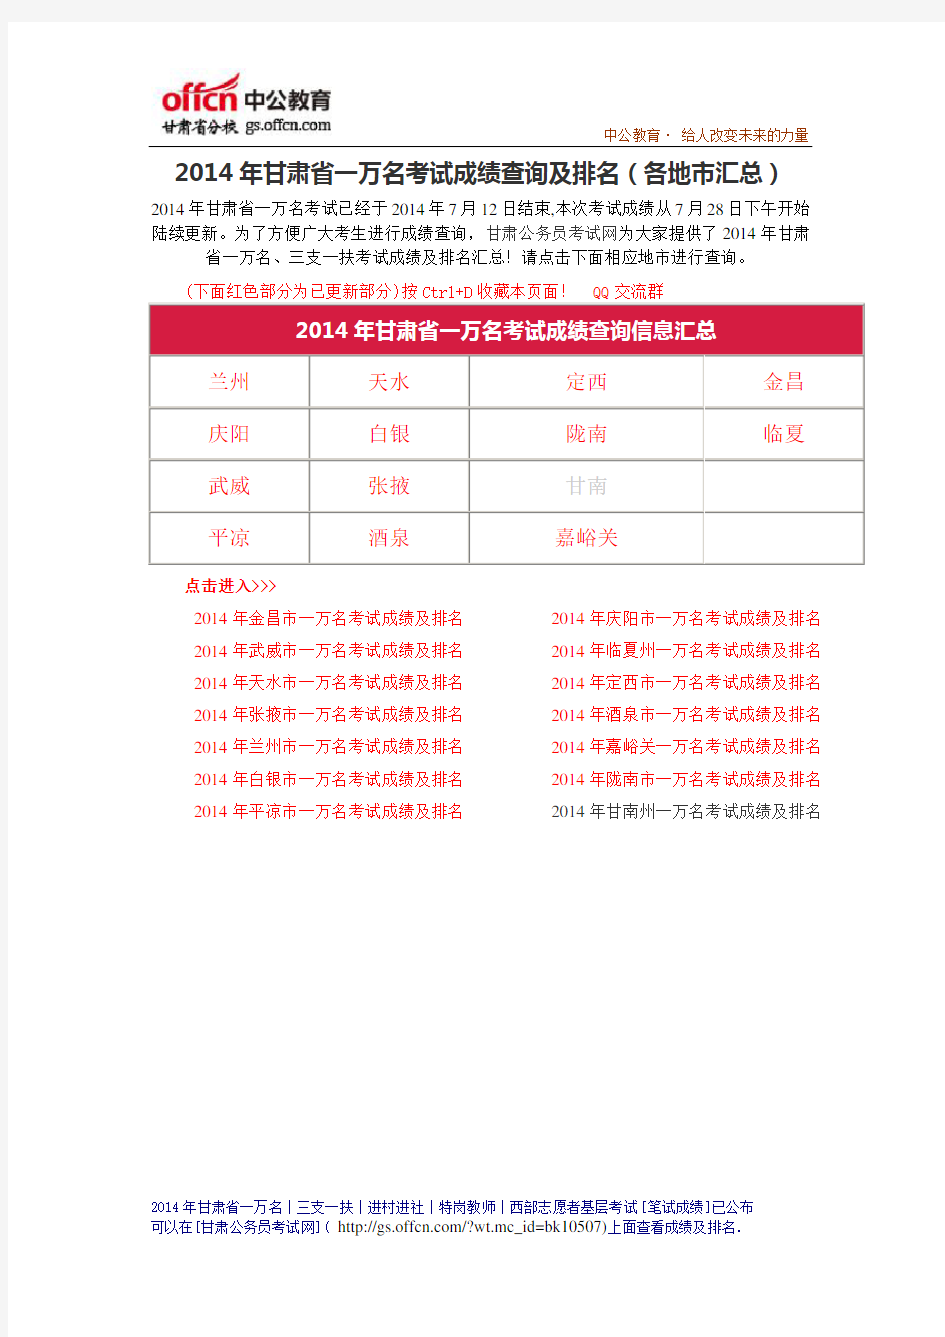 2014年甘肃省一万名考试成绩排名 (1)